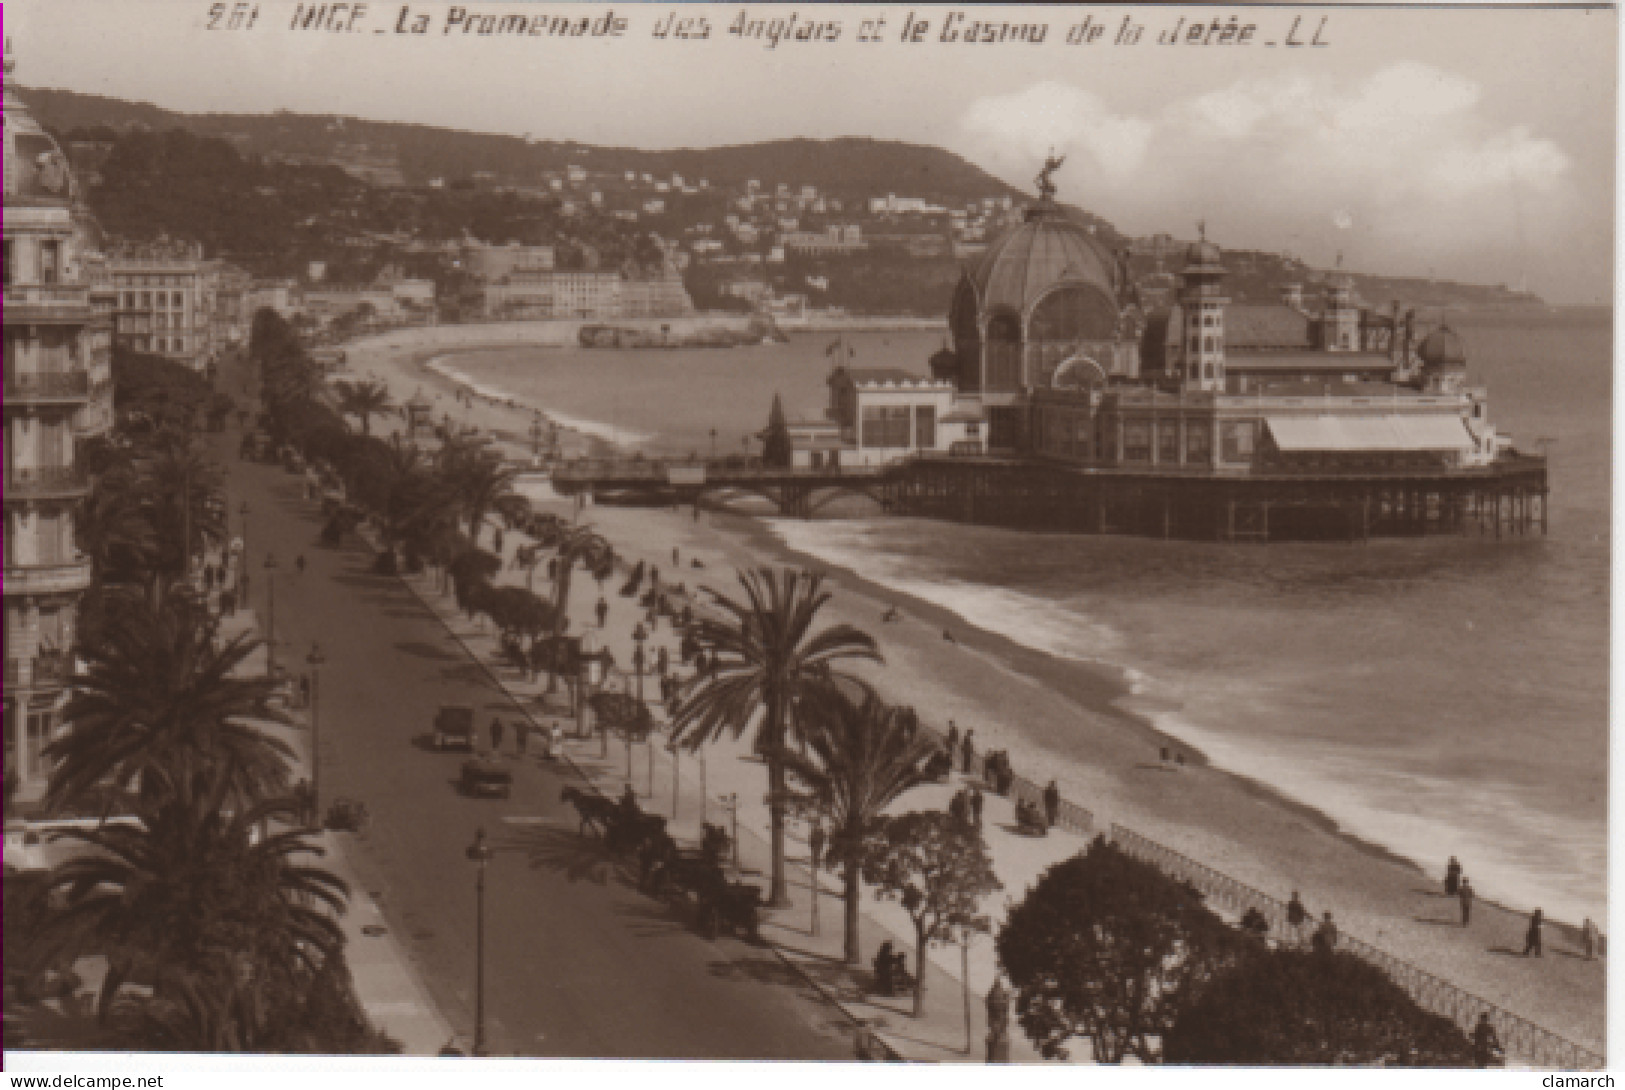 ALPES MARITIMES-Nice-La Promenade Des Anglais Et Le Casino De La Jetée - LL 261 - Monuments, édifices